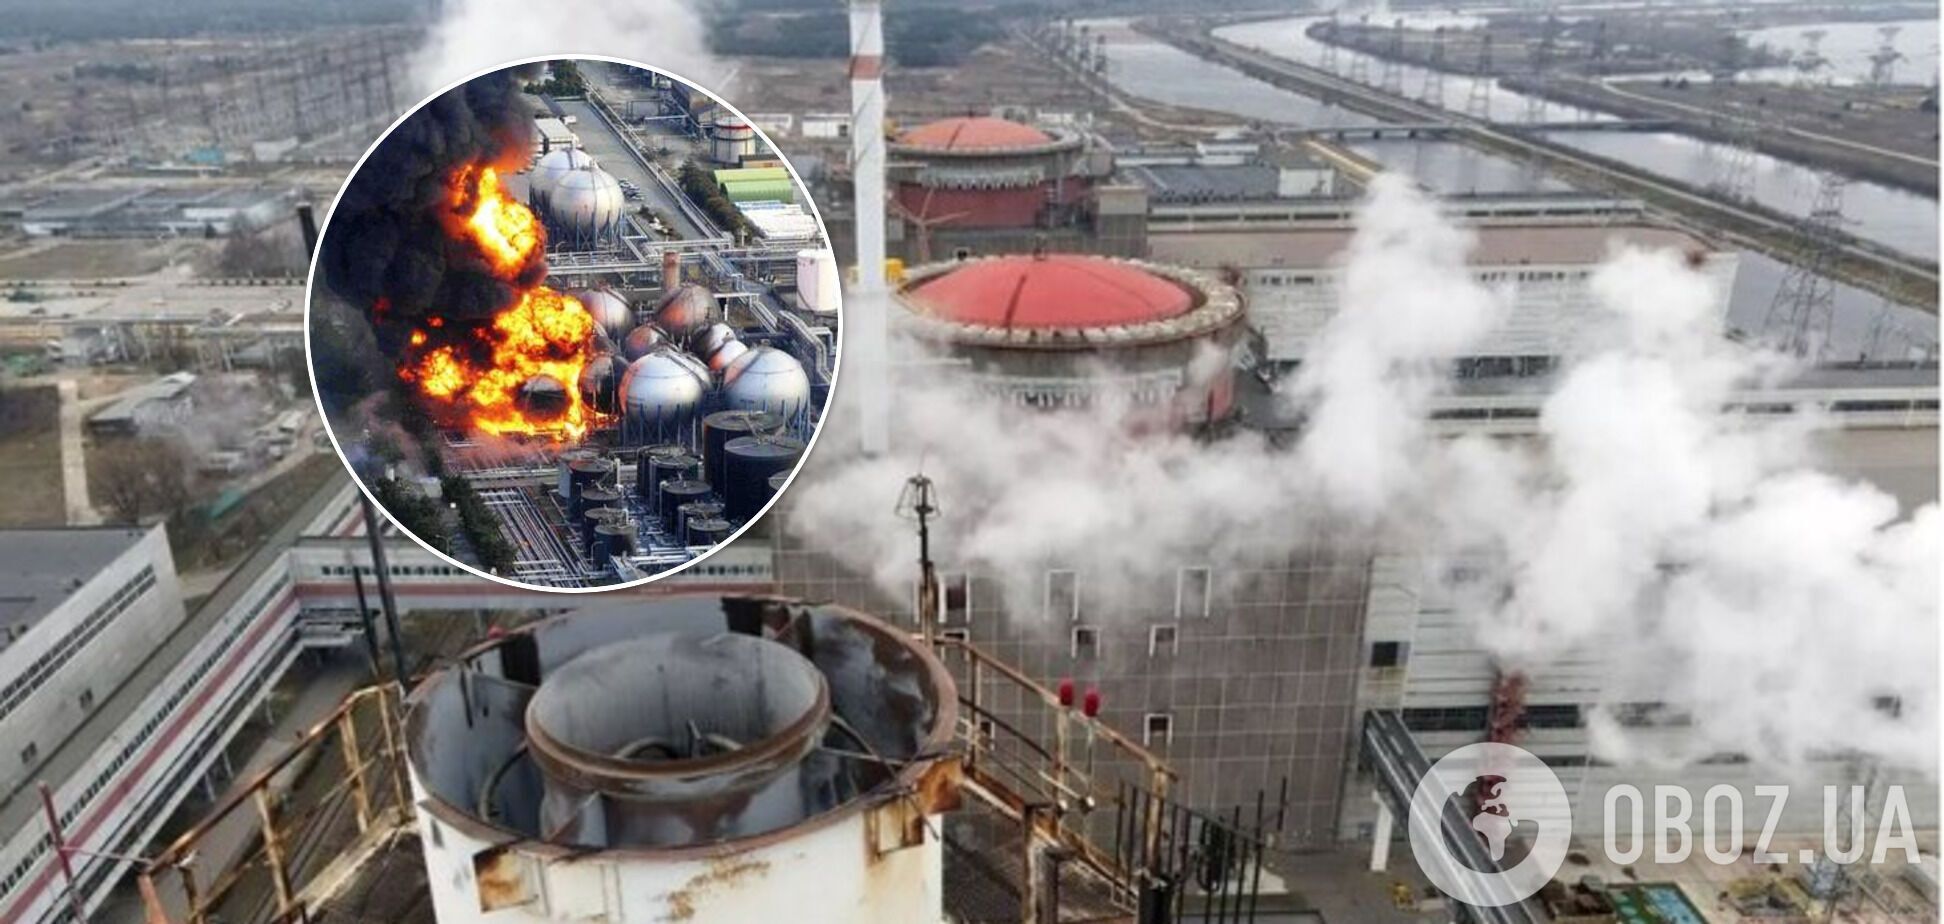 Из-за преступных действий кафиров на ЗАЭС может произойти такая же авария, как японской "Фукусима-1"